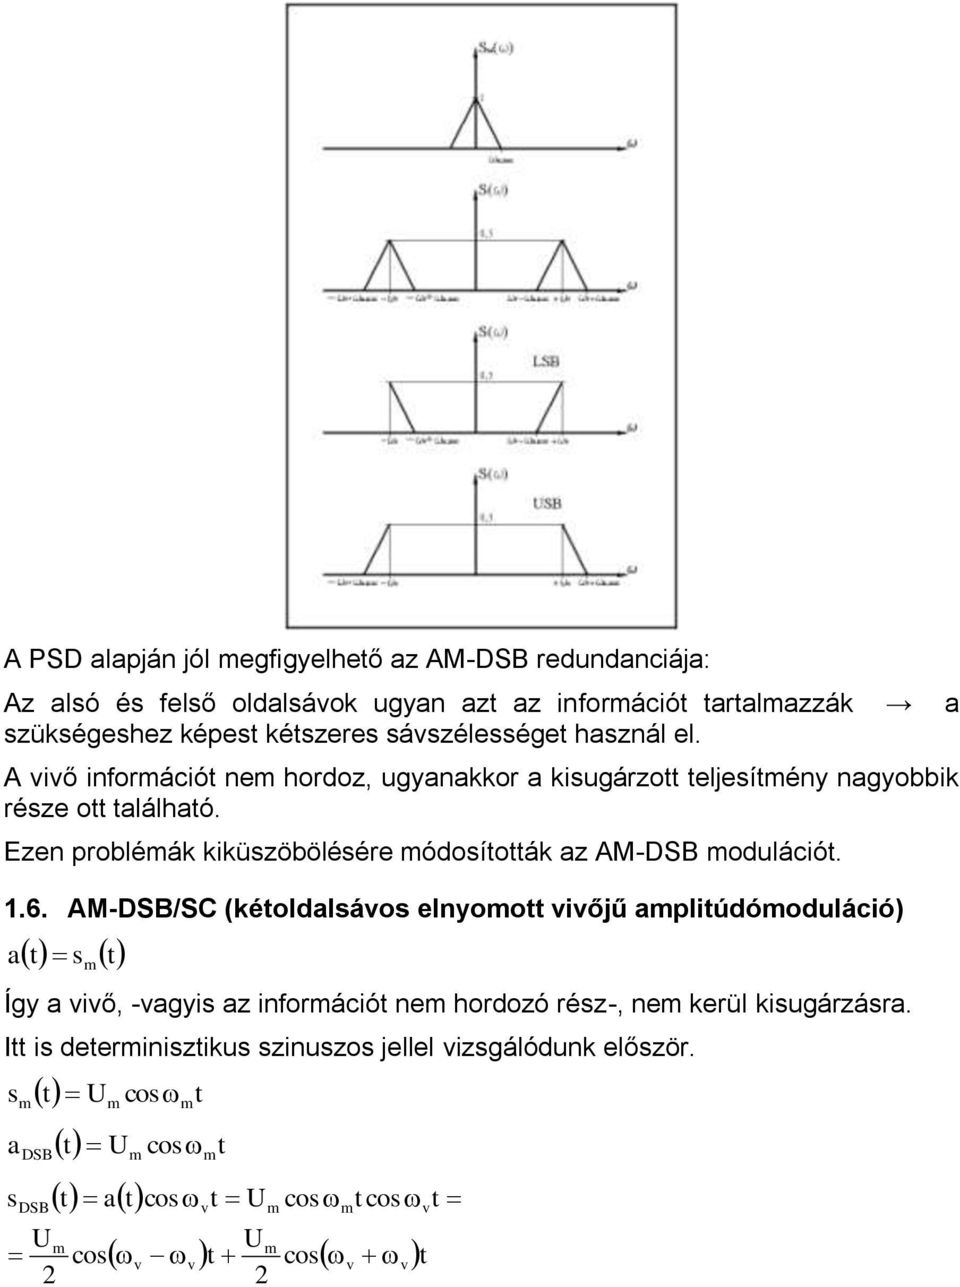 Ezen probléák kiküzöböléére ódoíoák z M-DSB oduláció..6.